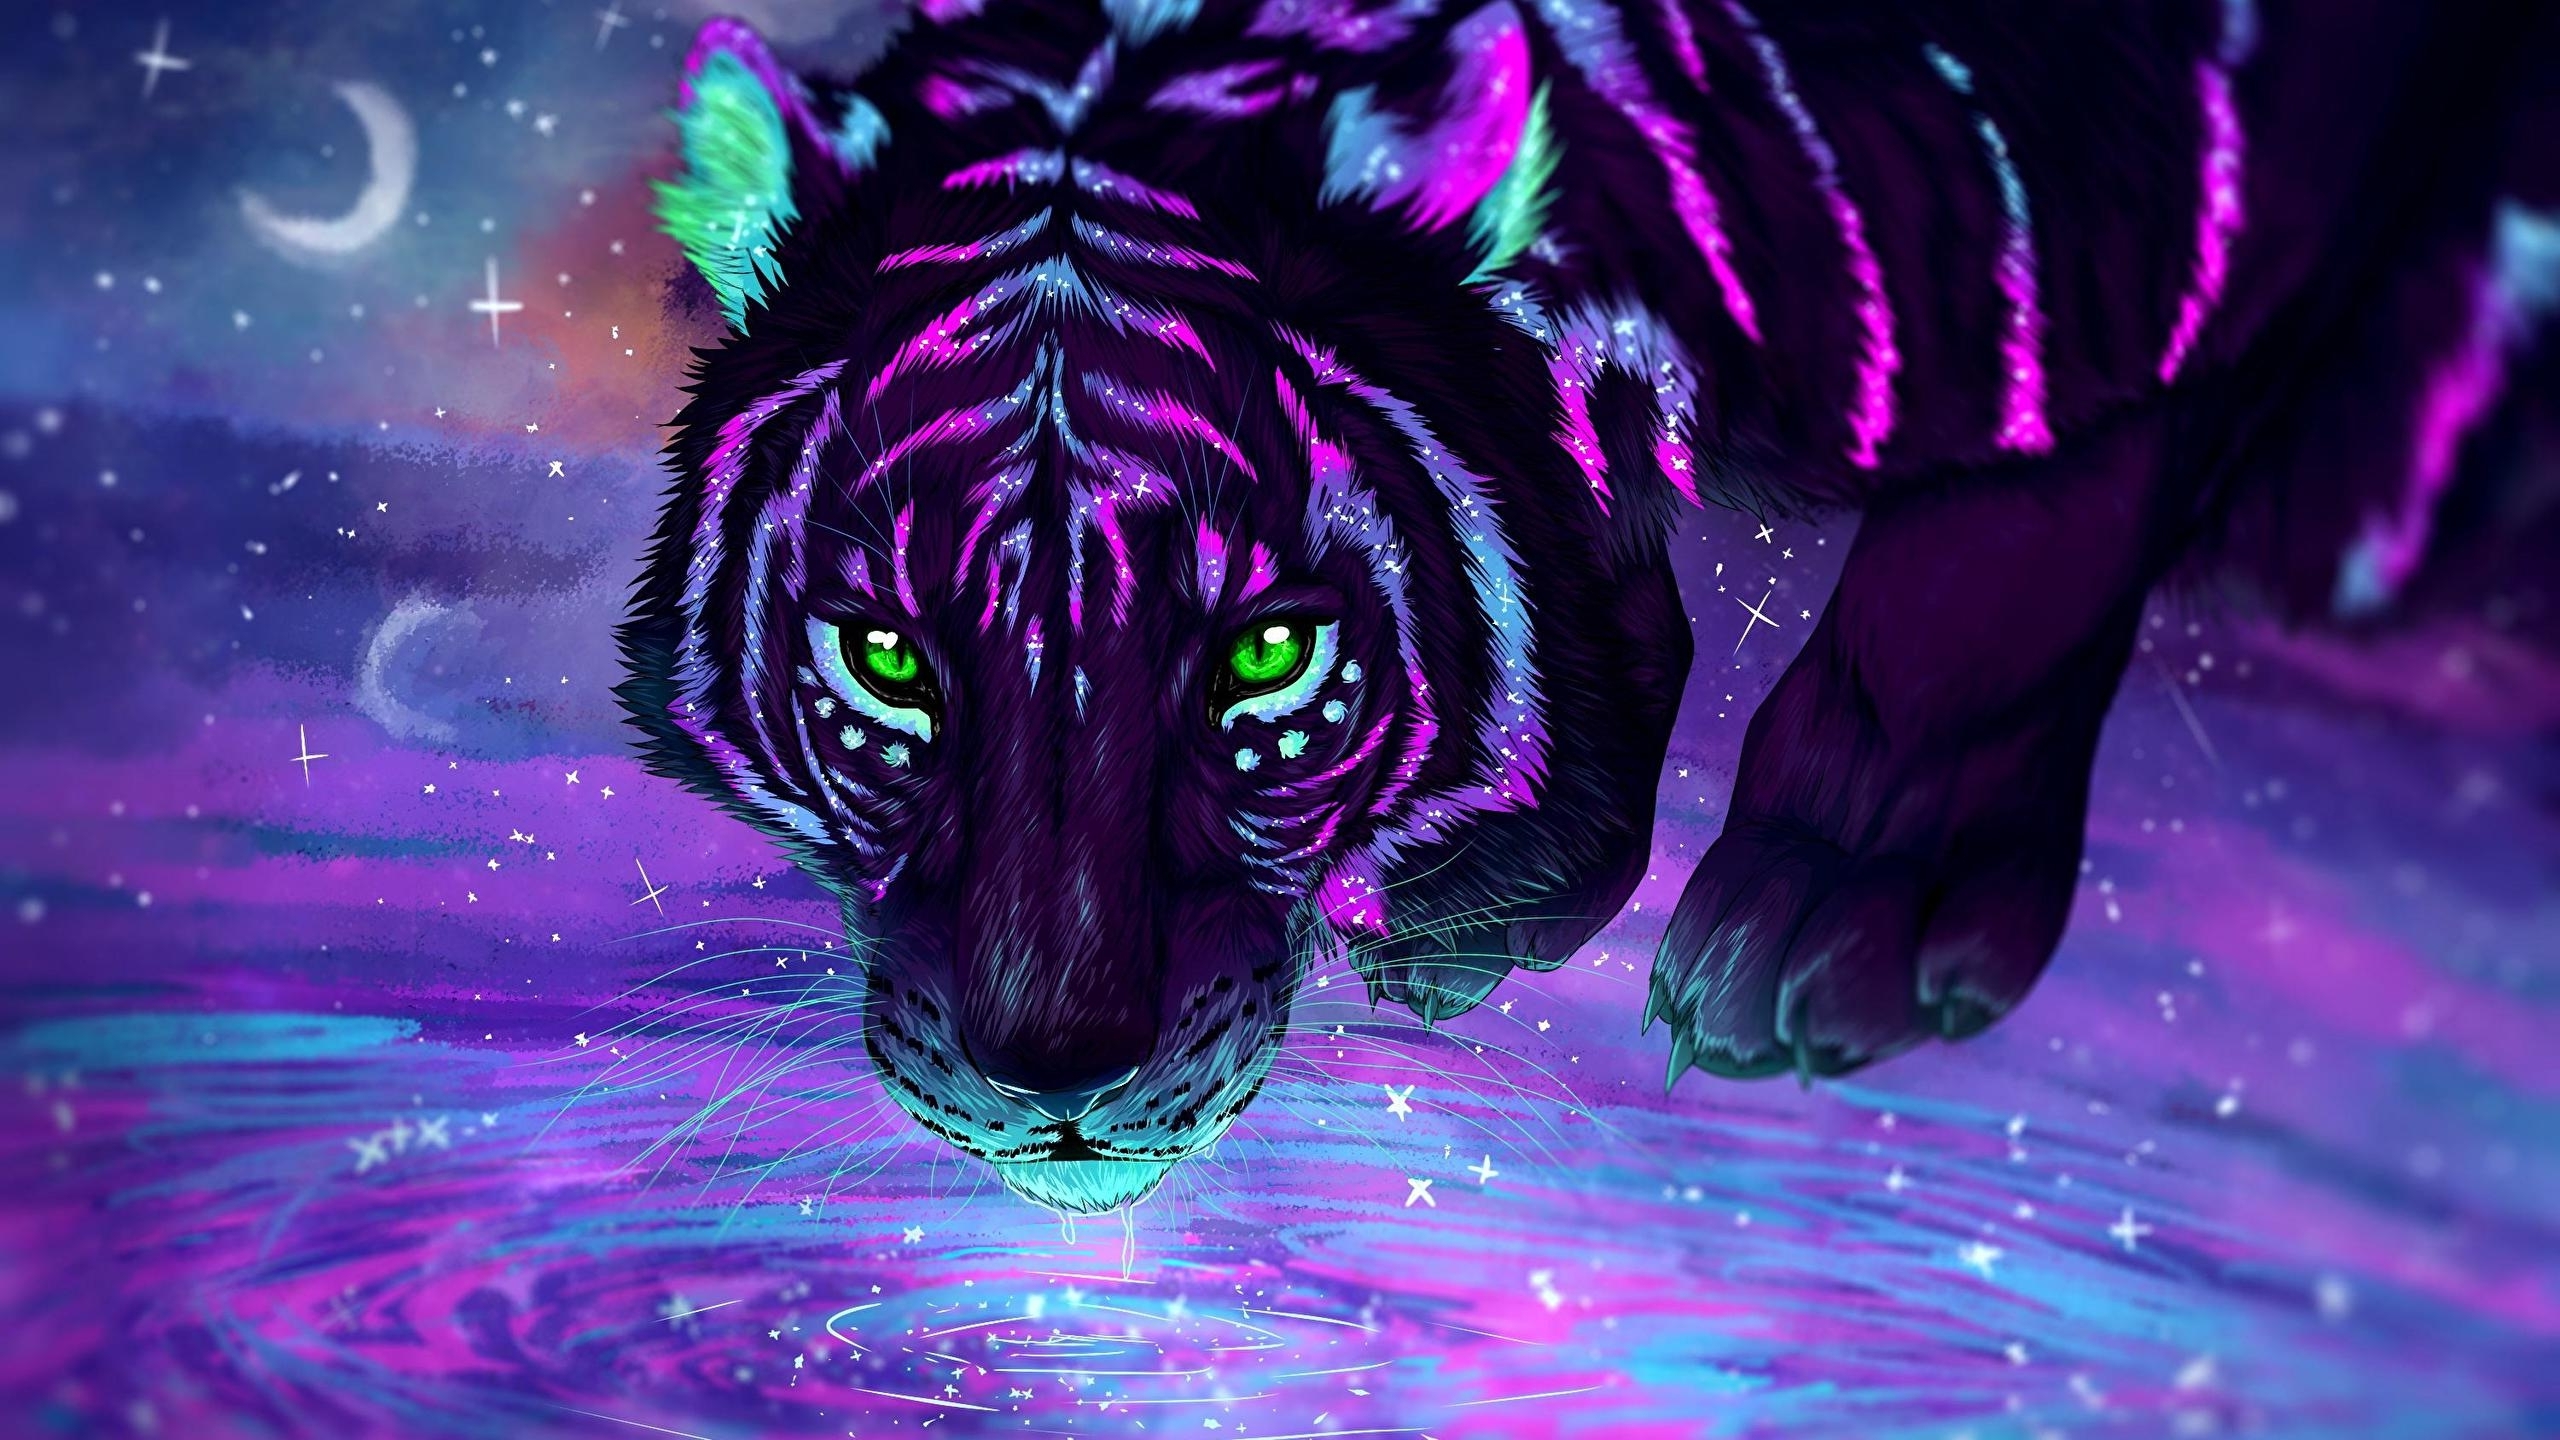 Wallpaper Green Eyes, Tiger, Digital Art, Purple - Resolution:2560x1440 ...